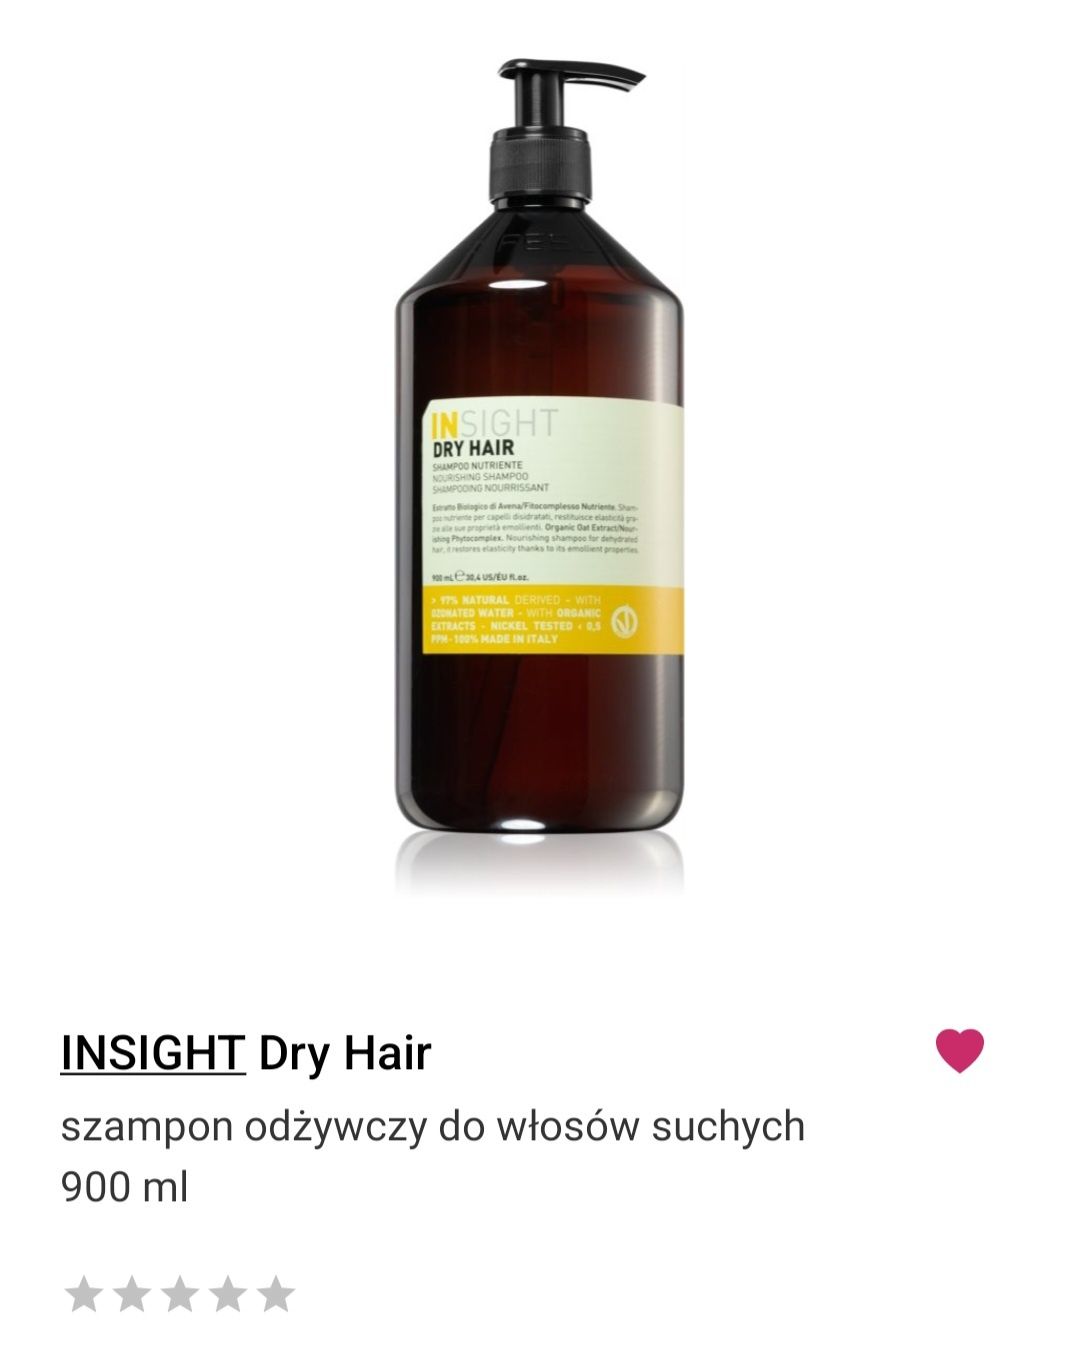 Insight dry hair 900ml nowy szampon do włosów